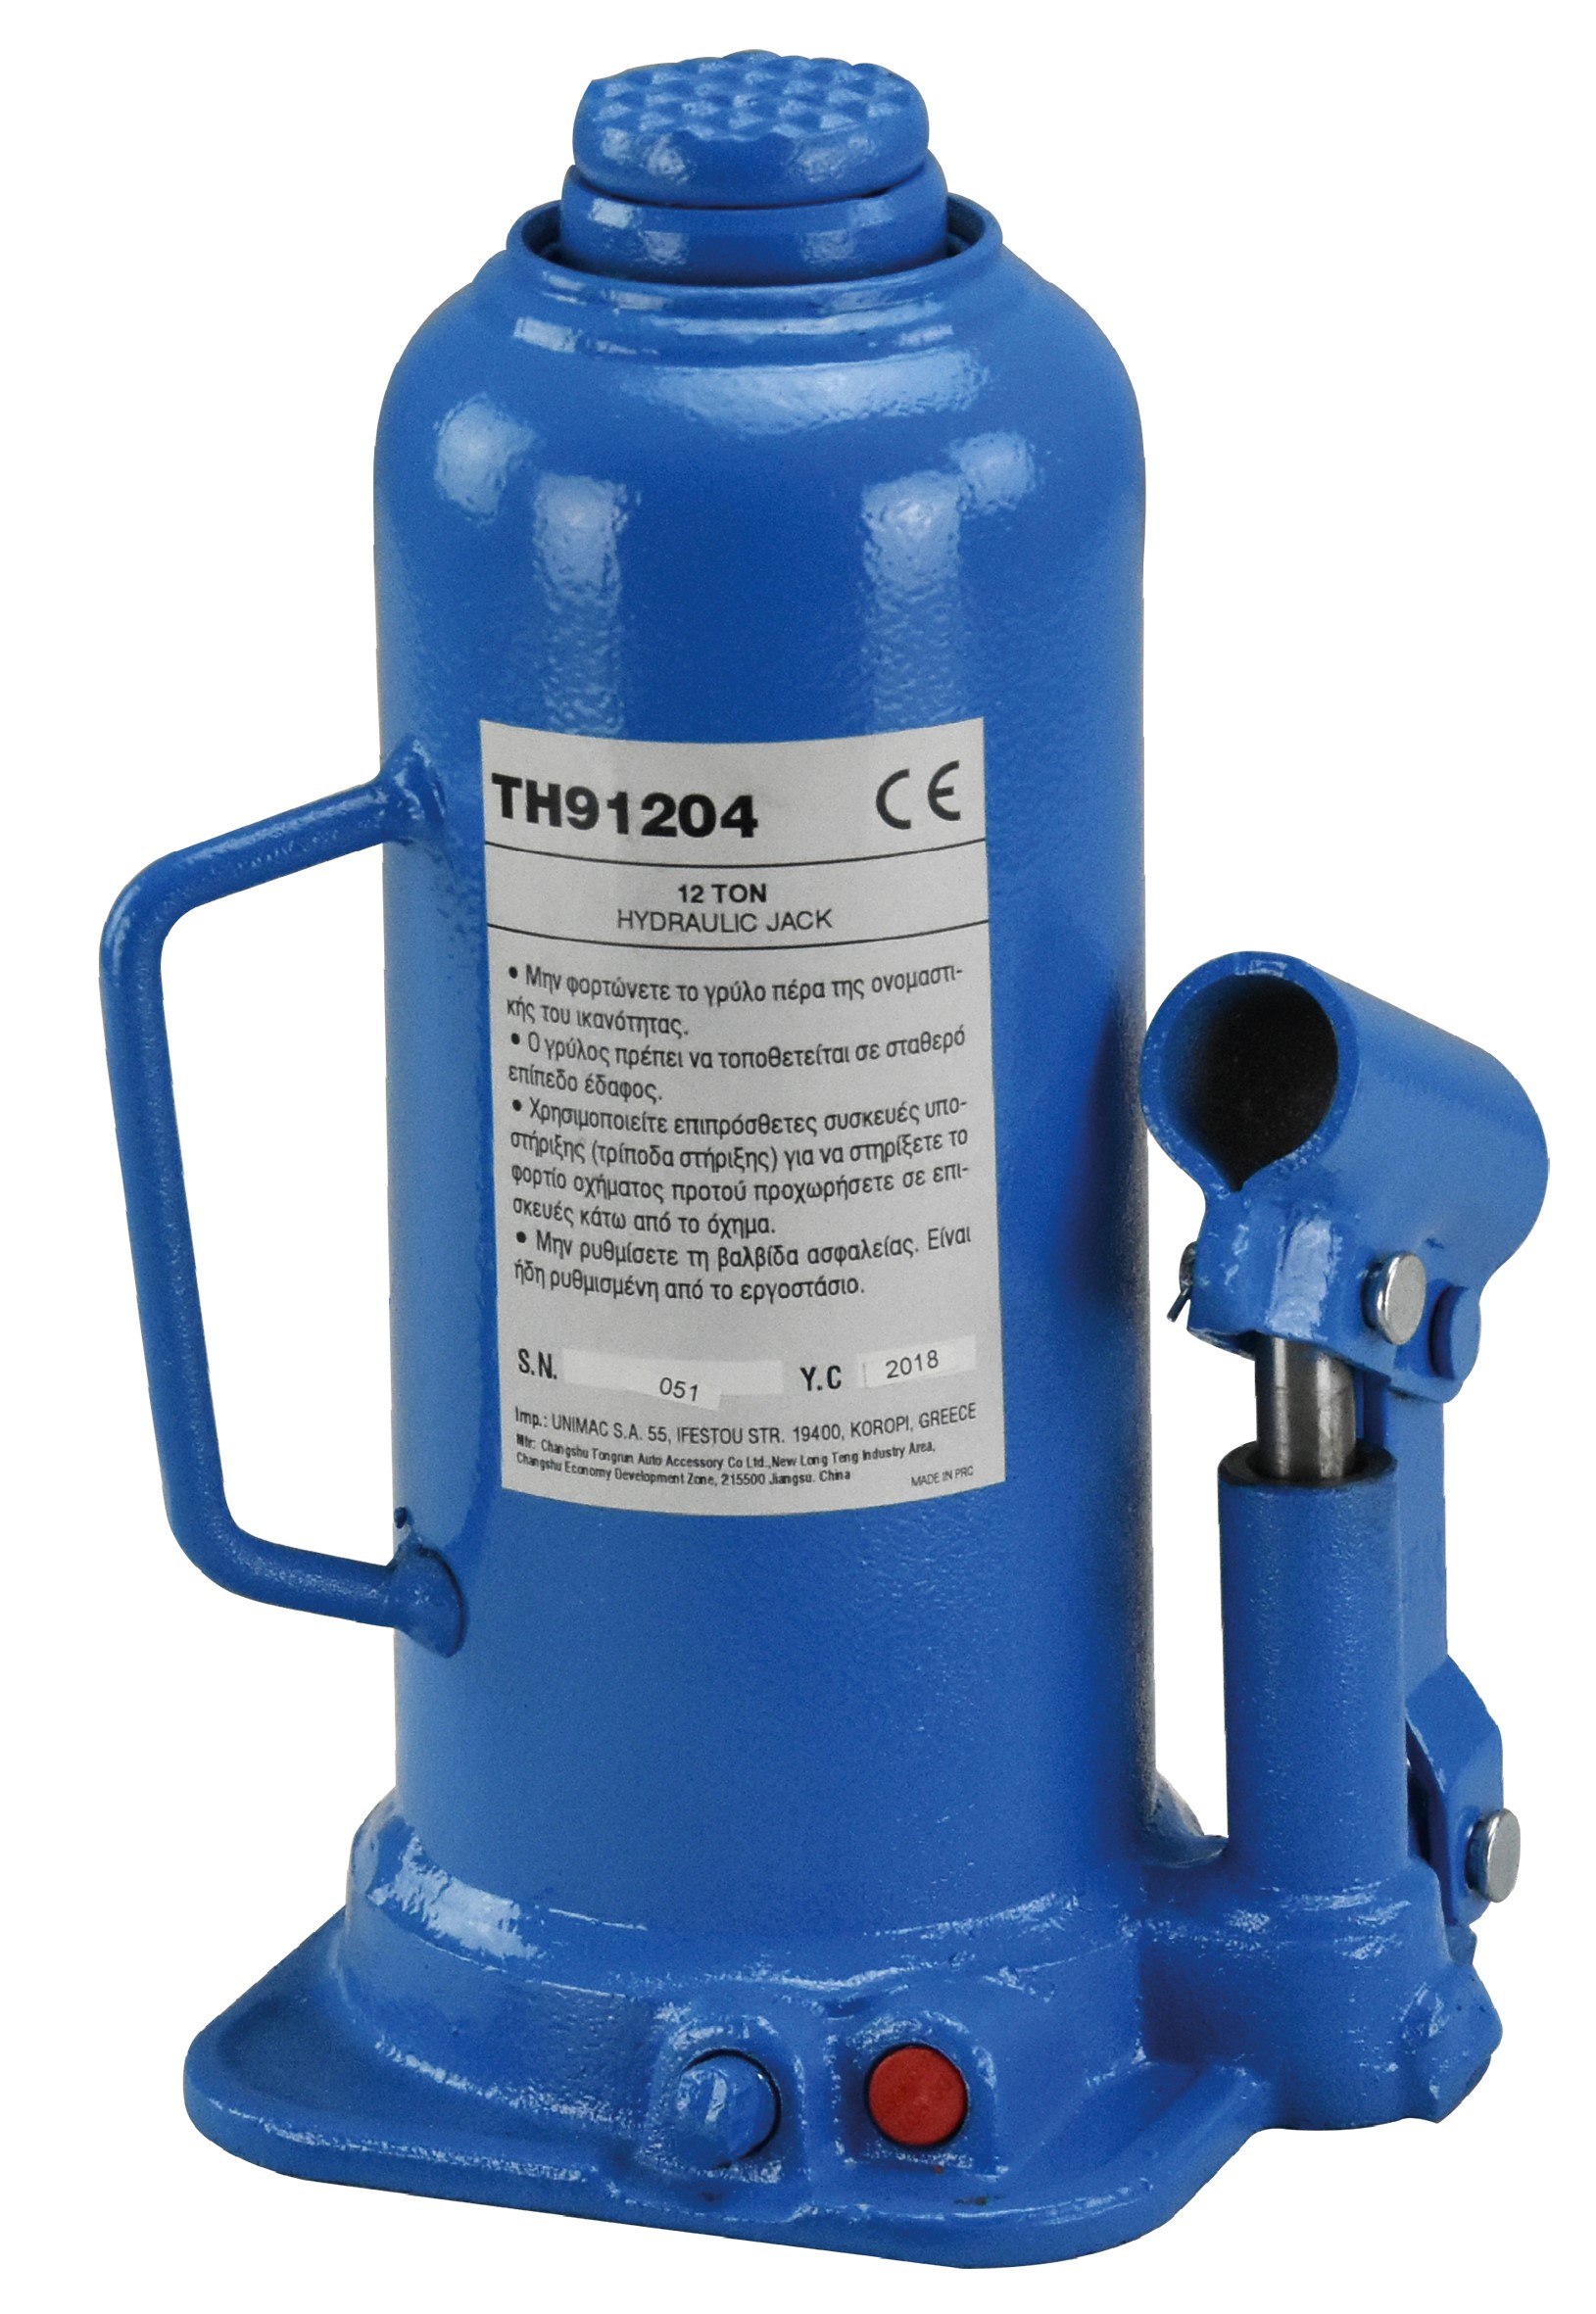 Υδραυλικός γρύλος μπουκάλας 12tn 40610 EXPRESS